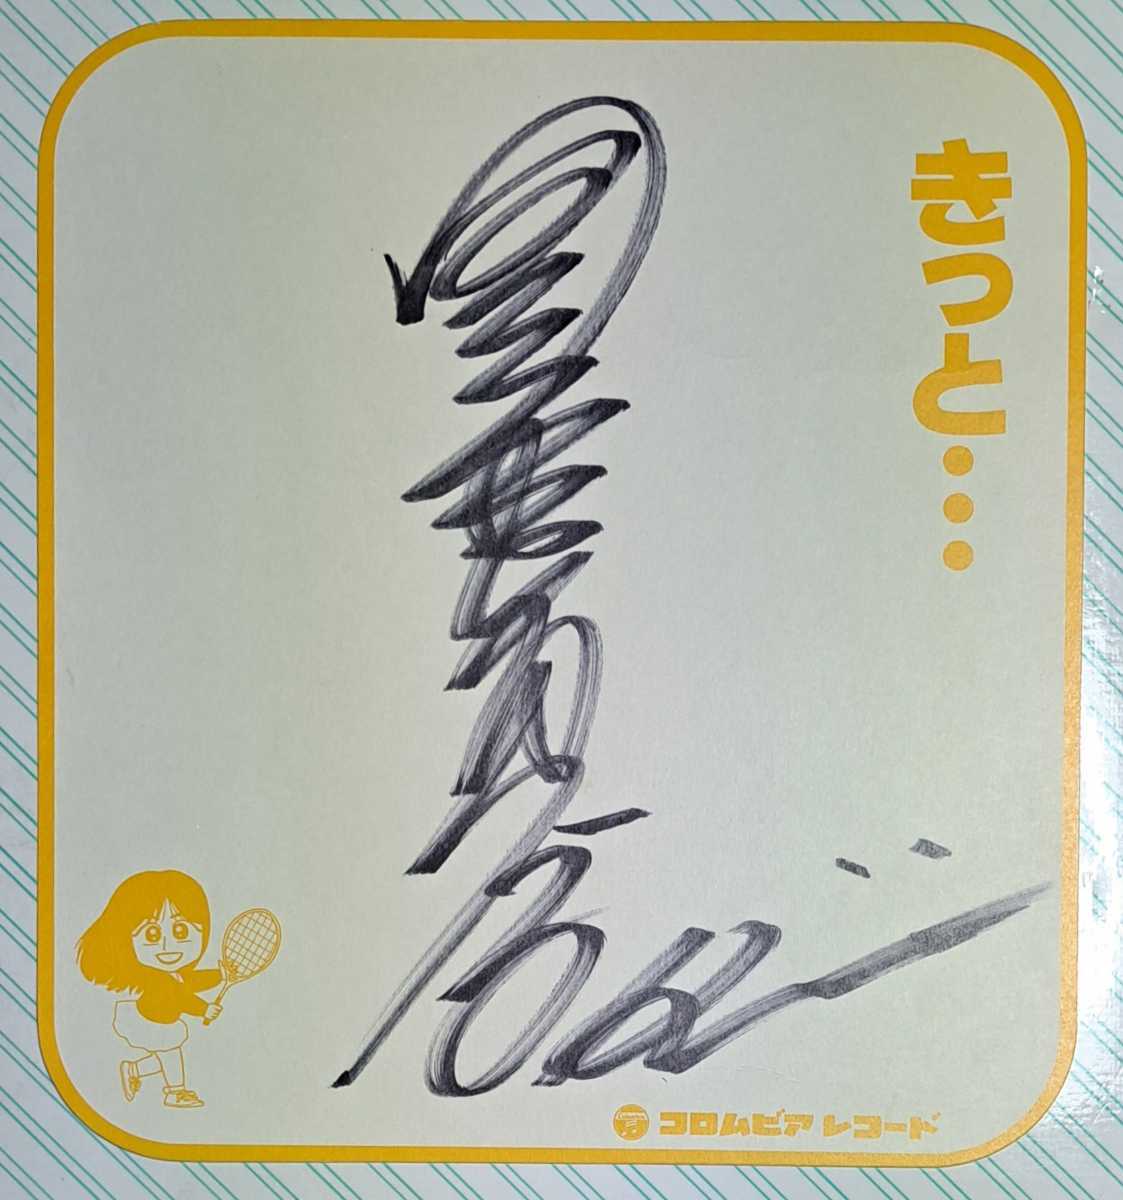 Yuri Kunizane 亲笔签名 Shikishi 我确定... 8 月 21 日, 1989 兵库学园城自由厅国真勇利 立即购买, 人才商品, 符号